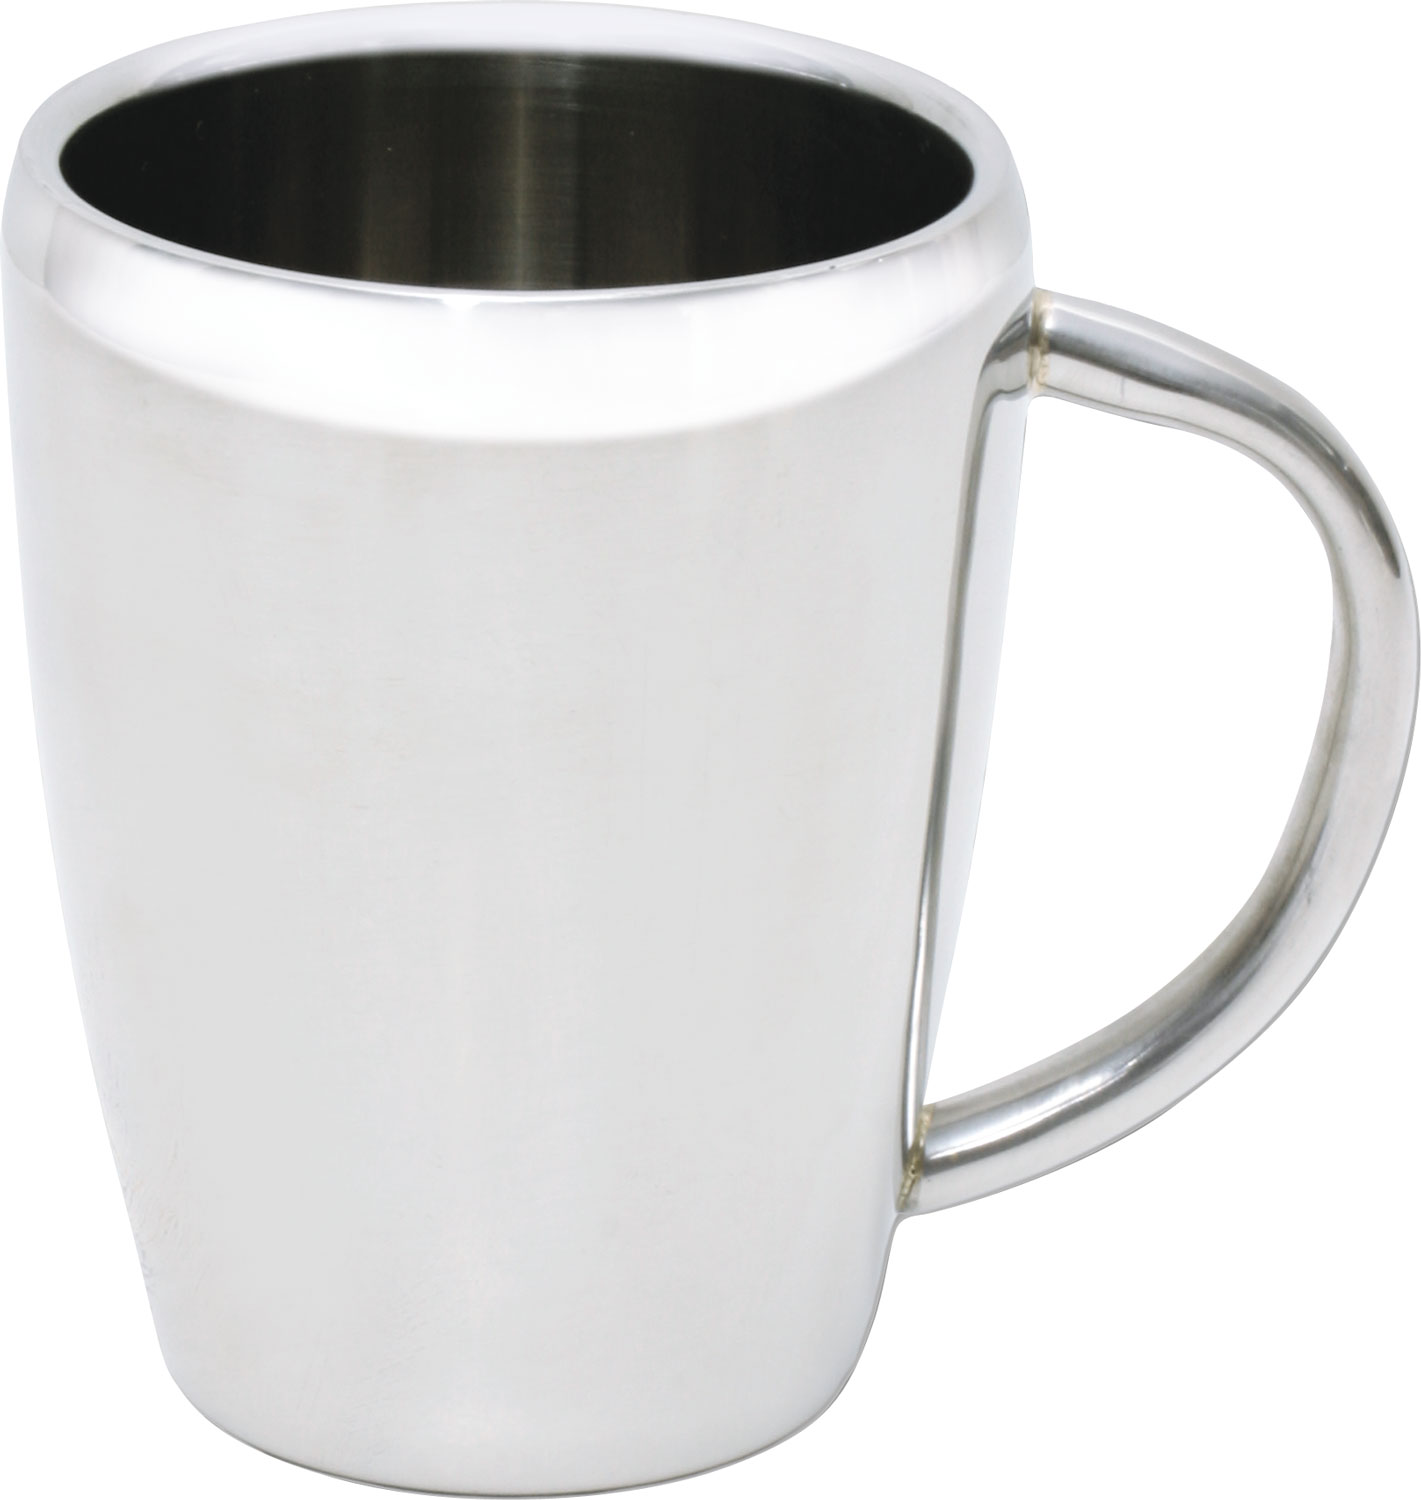 Yorkie mug